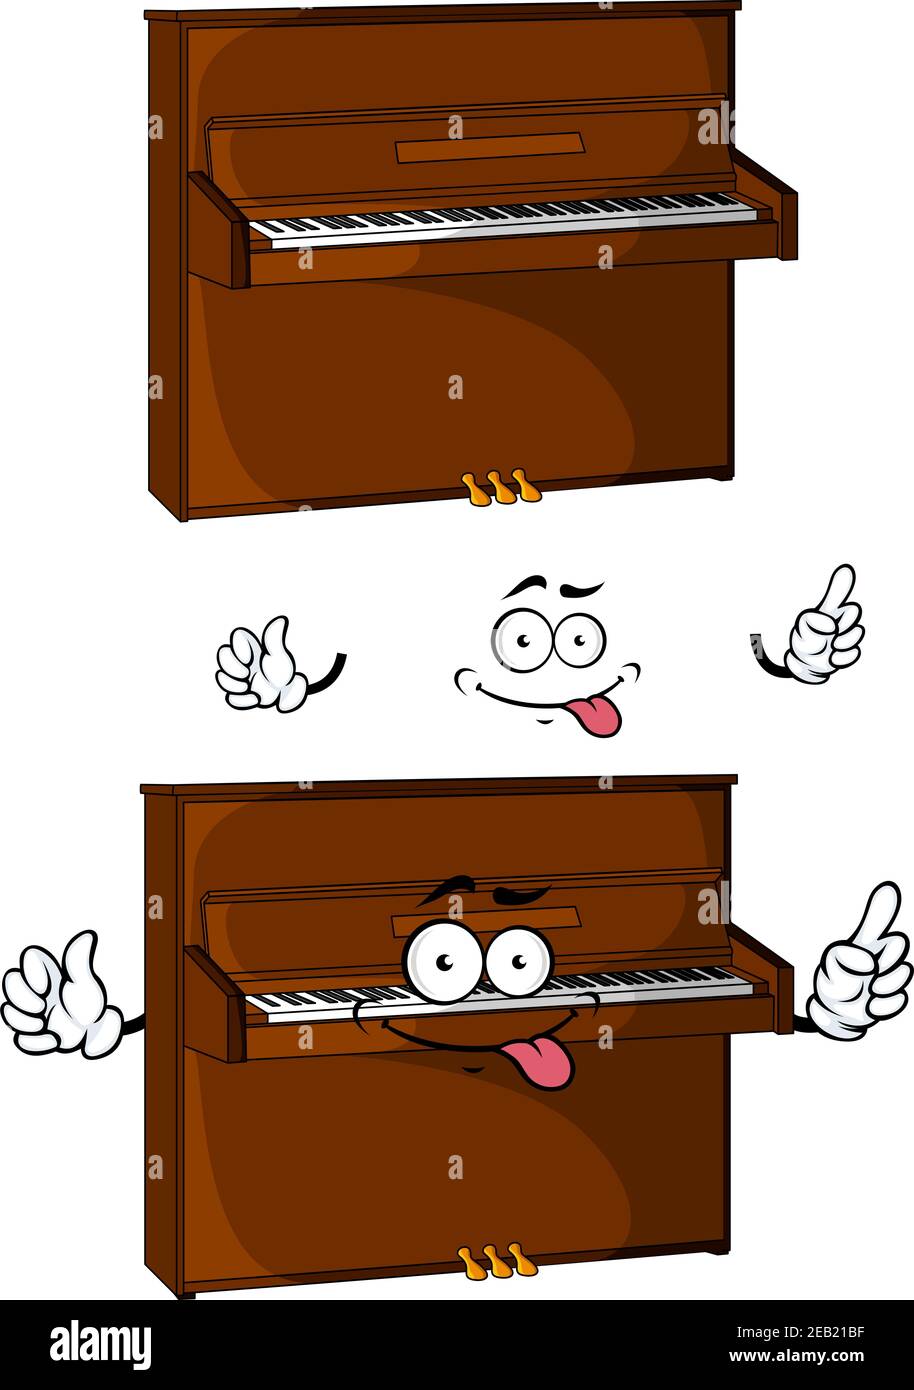 Teasing Cartoon braun Klavier Charakter isoliert auf weißem Hintergrund für Leistung oder Musikdesign Stock Vektor